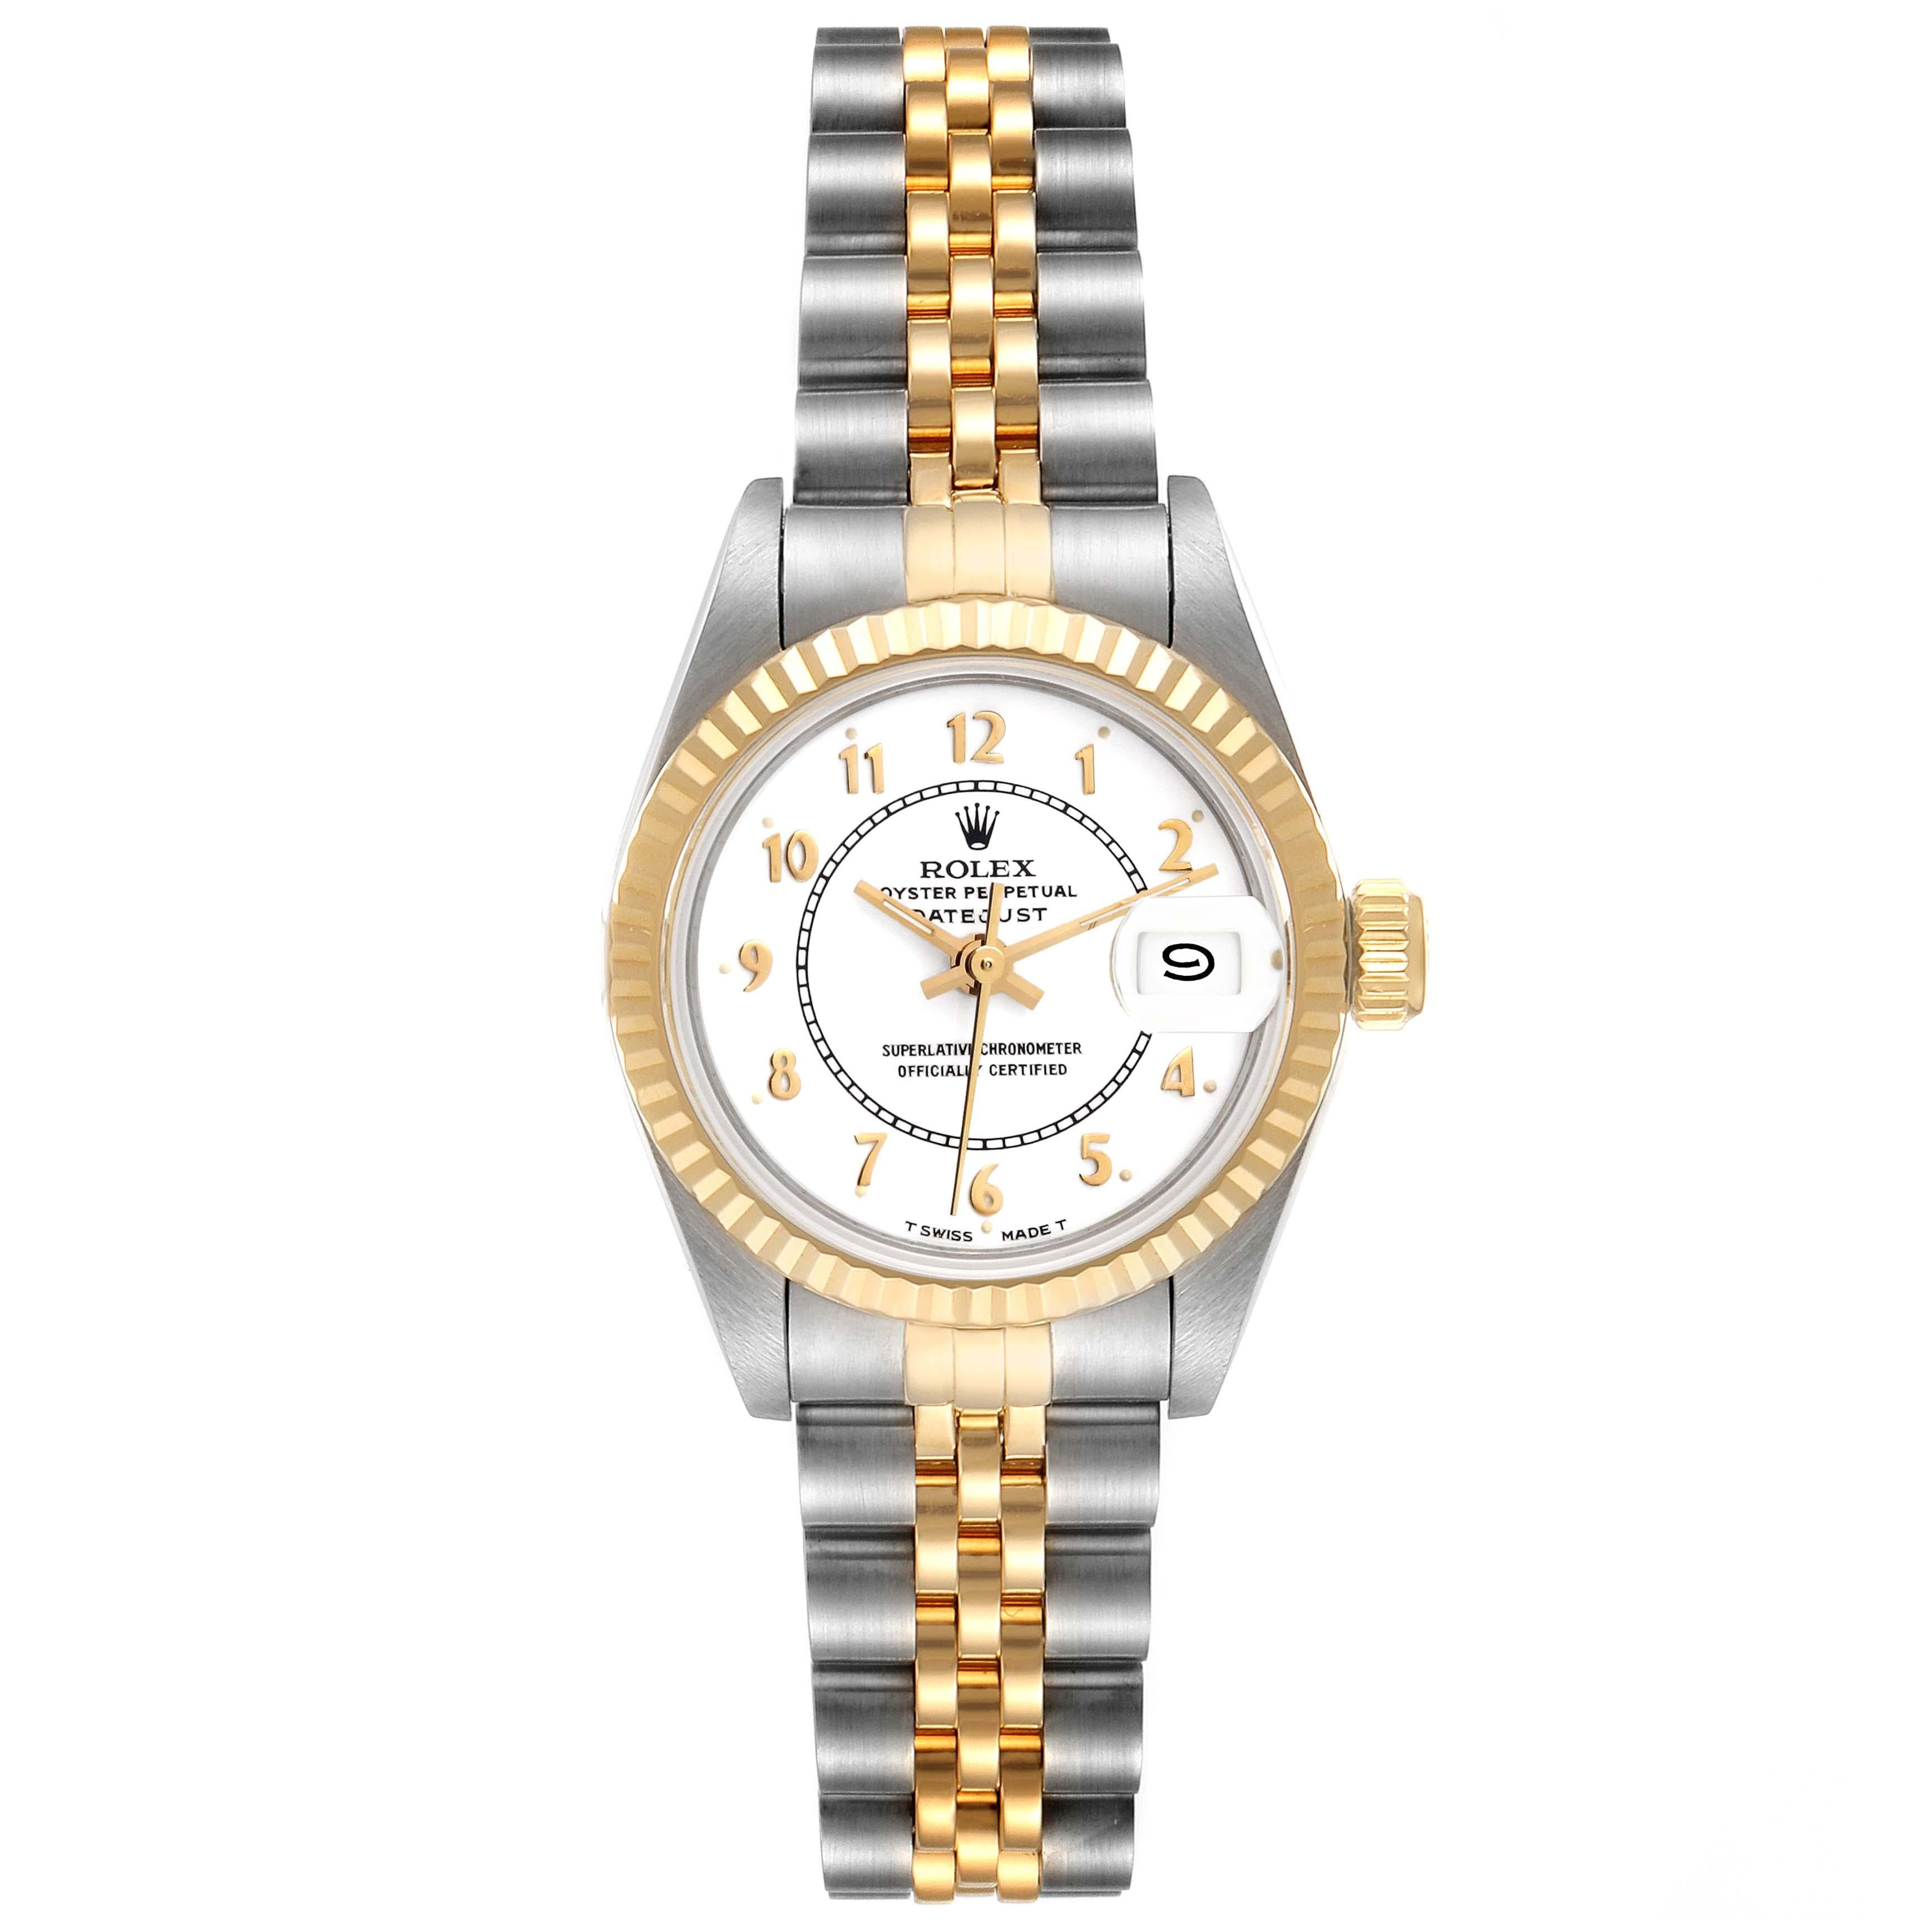 Rolex Datejust Weißes Arabisches Zifferblatt Stahl Gelbgold Damenuhr 69173. Offiziell zertifiziertes Chronometerwerk mit automatischem Aufzug. Austerngehäuse aus Edelstahl mit einem Durchmesser von 26.0 mm. Rolex Logo auf der Krone. Geriffelte